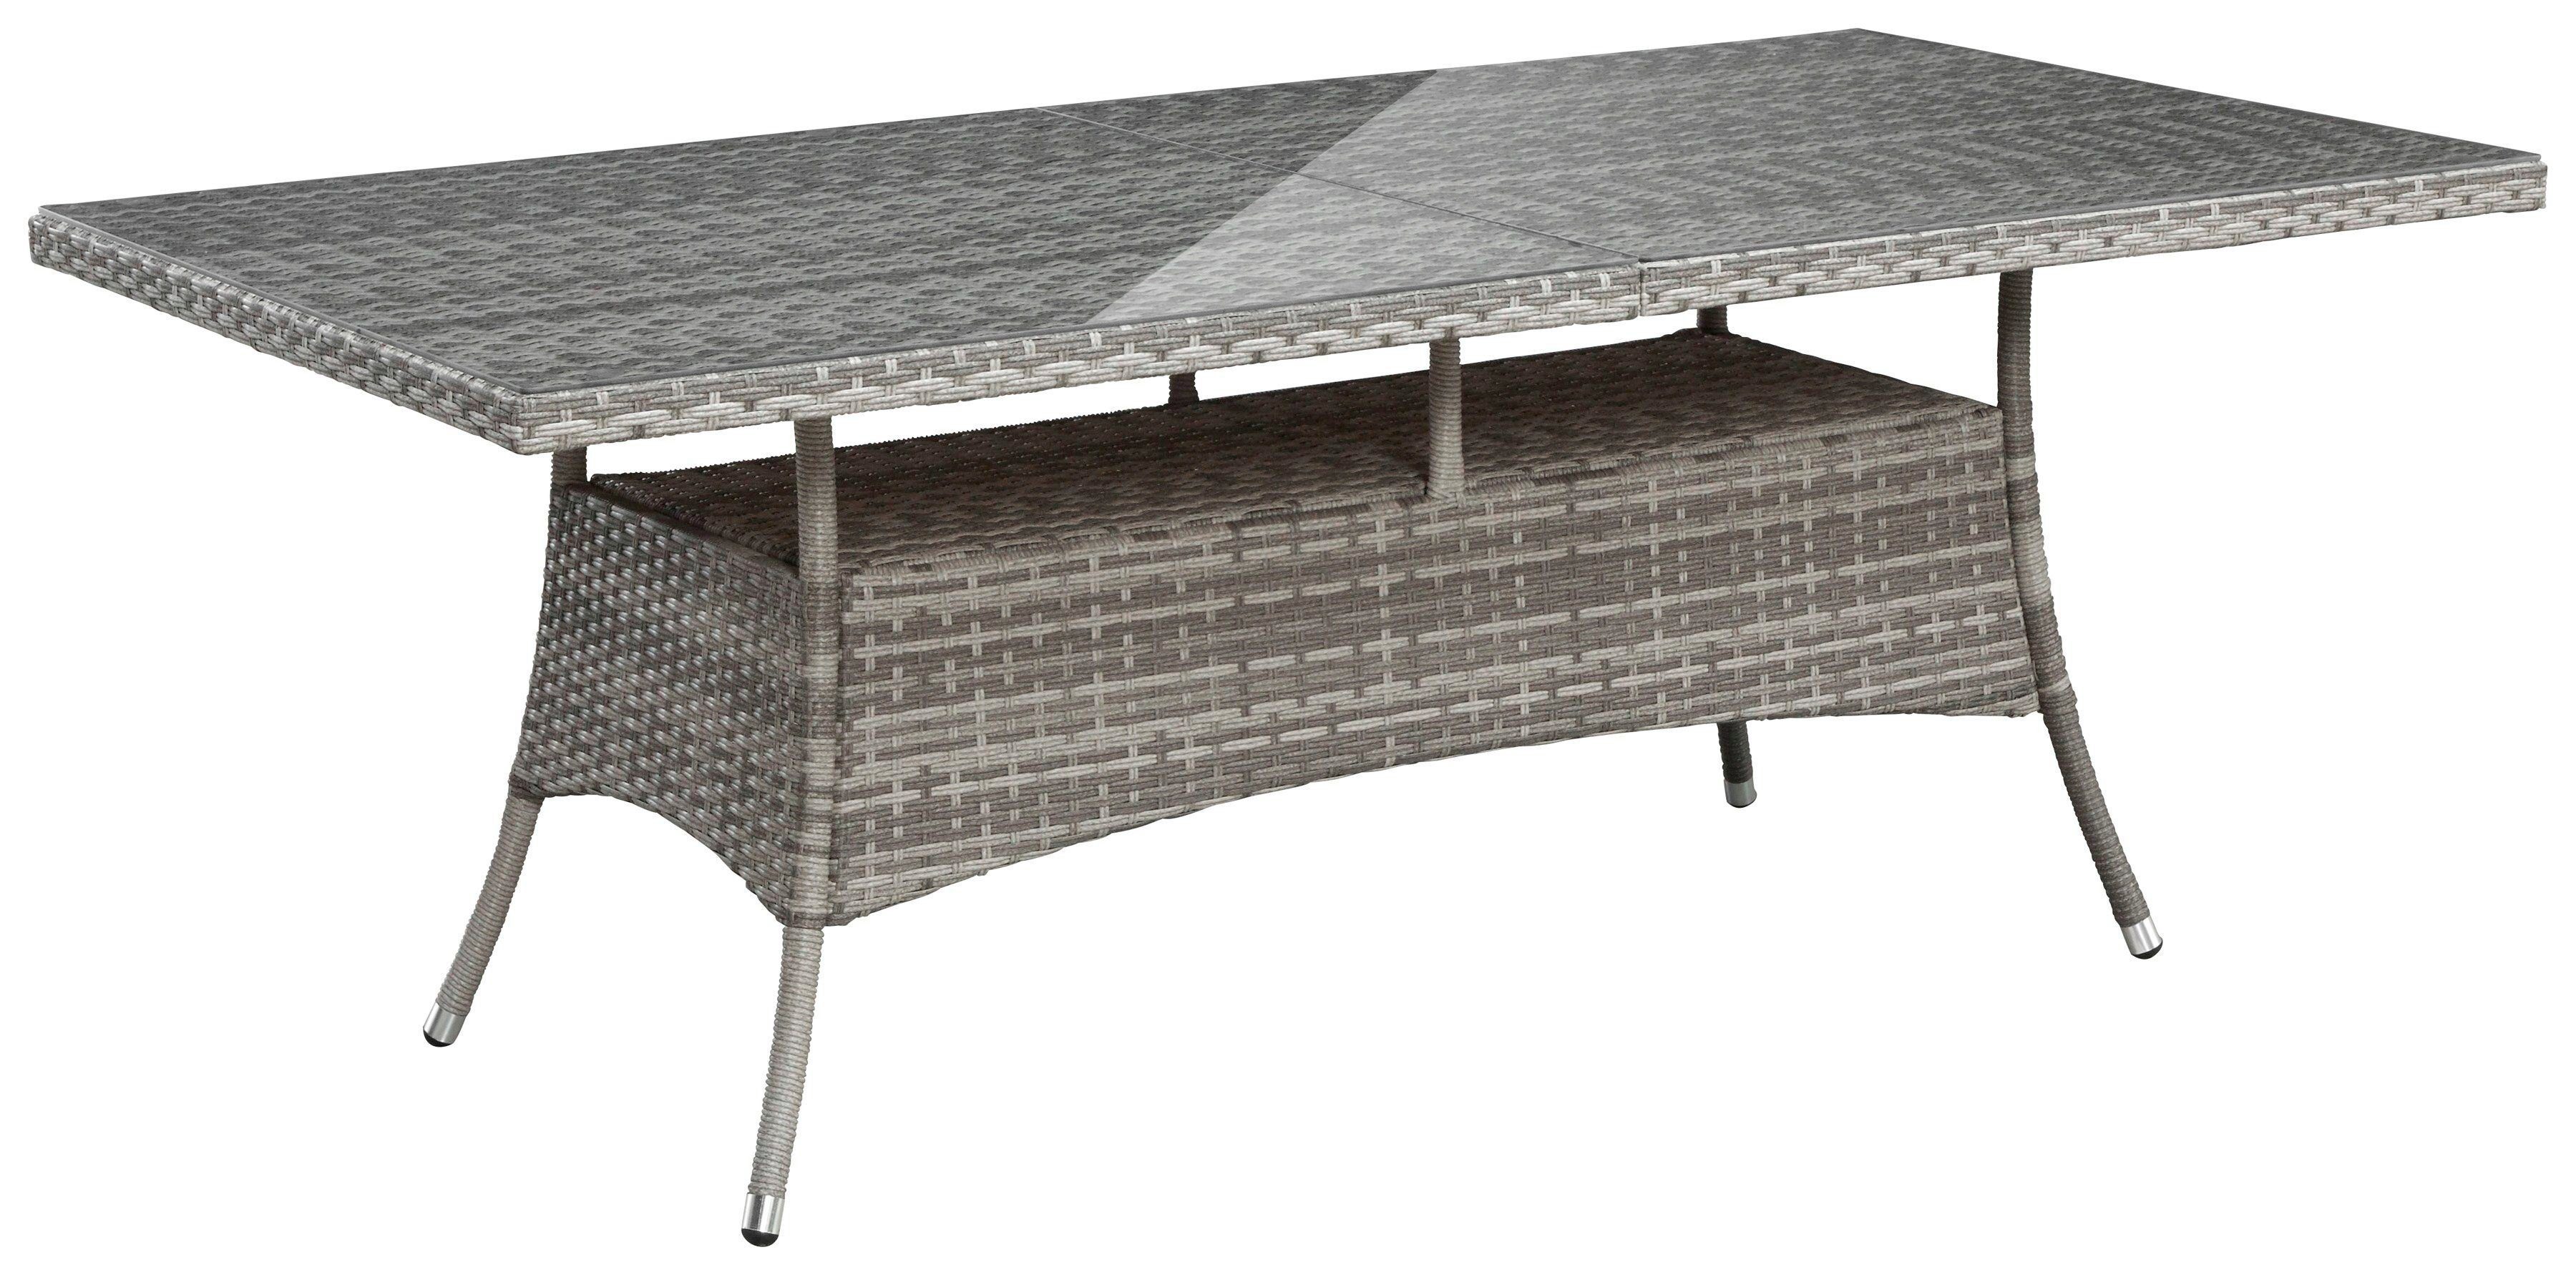 Tisch Sessel, Garten-Essgruppe Polyrattan cm, 8 Belluno, KONIFERA 200x100 (17-tlg),